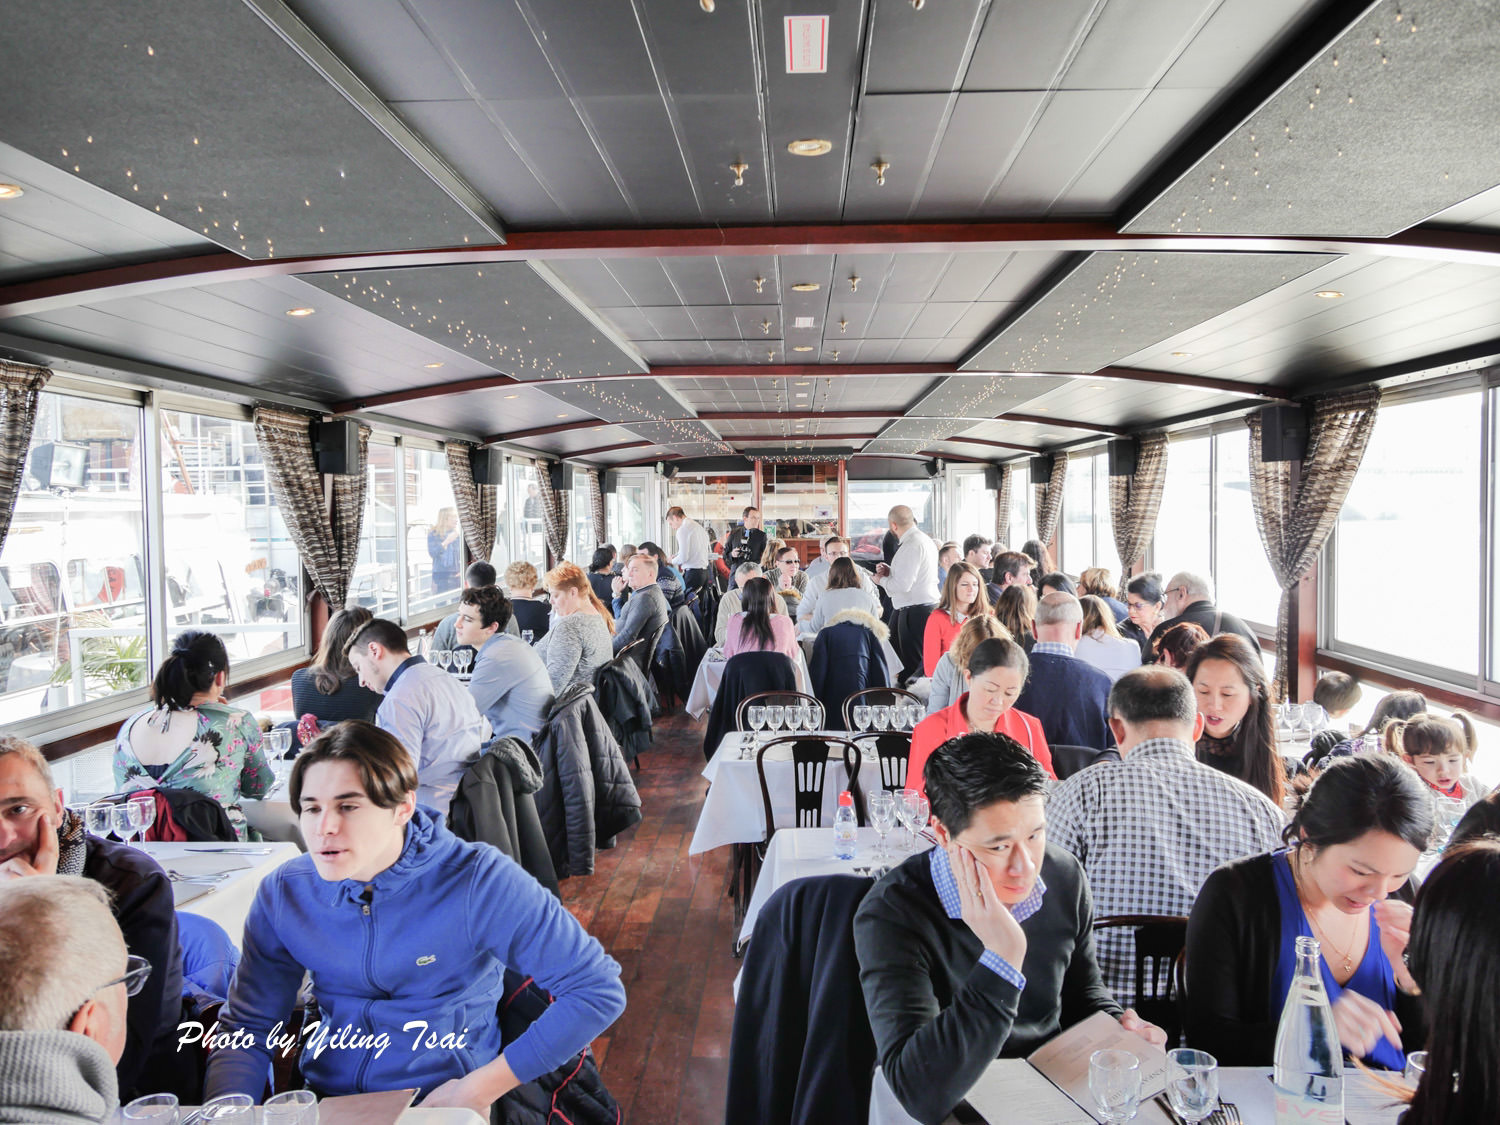 巴黎遊船推薦 La Marina 塞納河遊船午餐